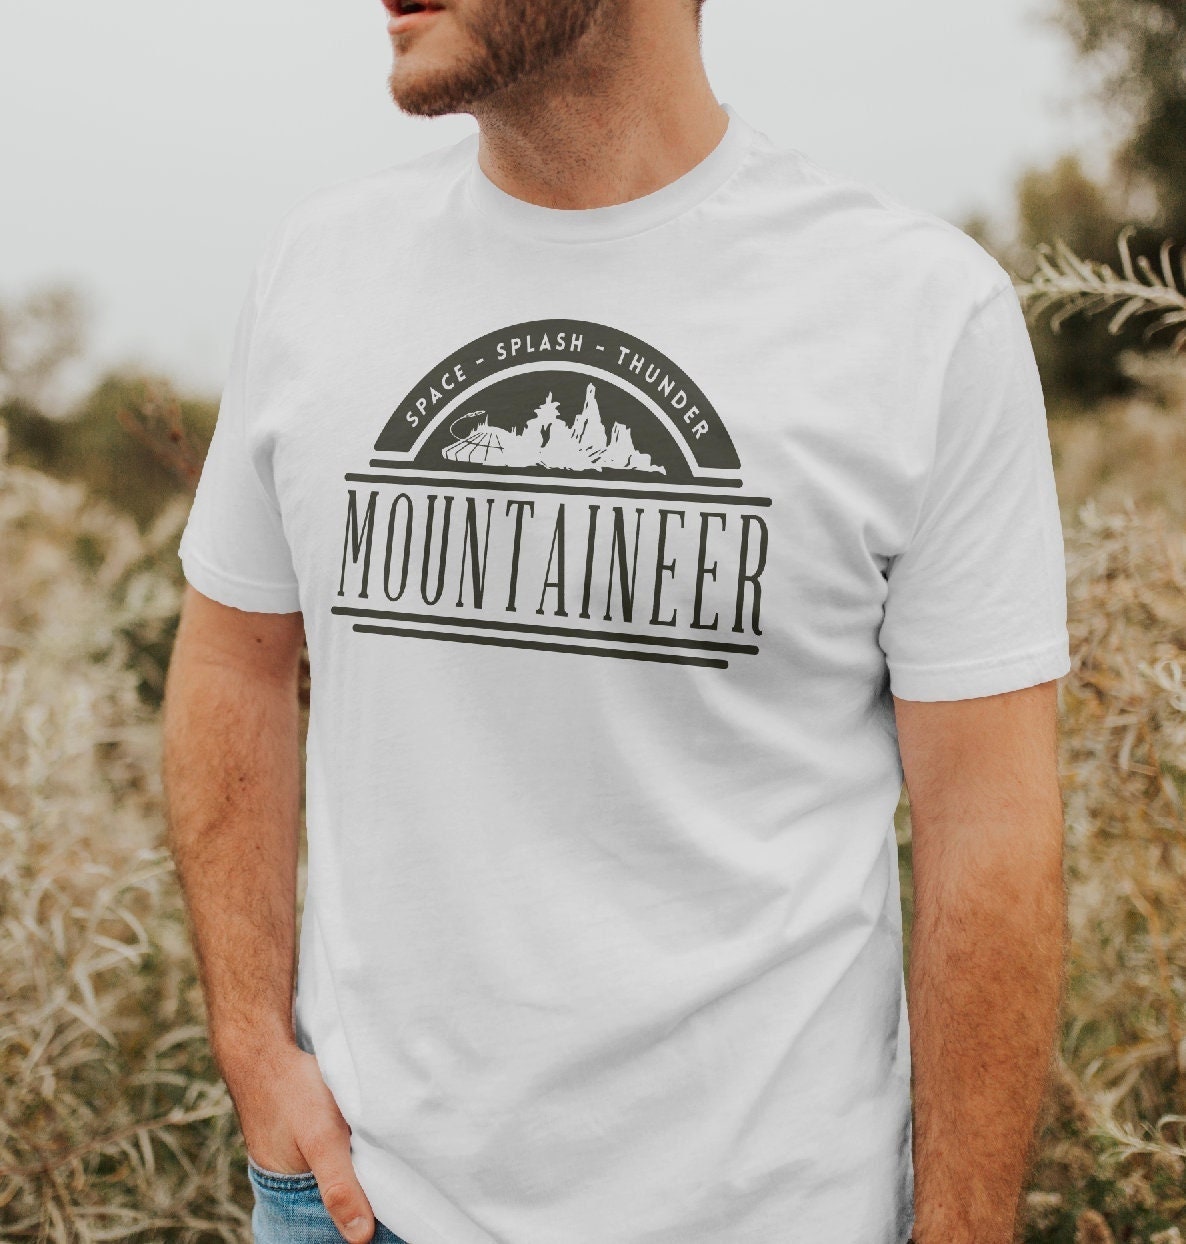 Mountaineer / Disney Rides / Space Mountain / Thunder Mountain Shirt